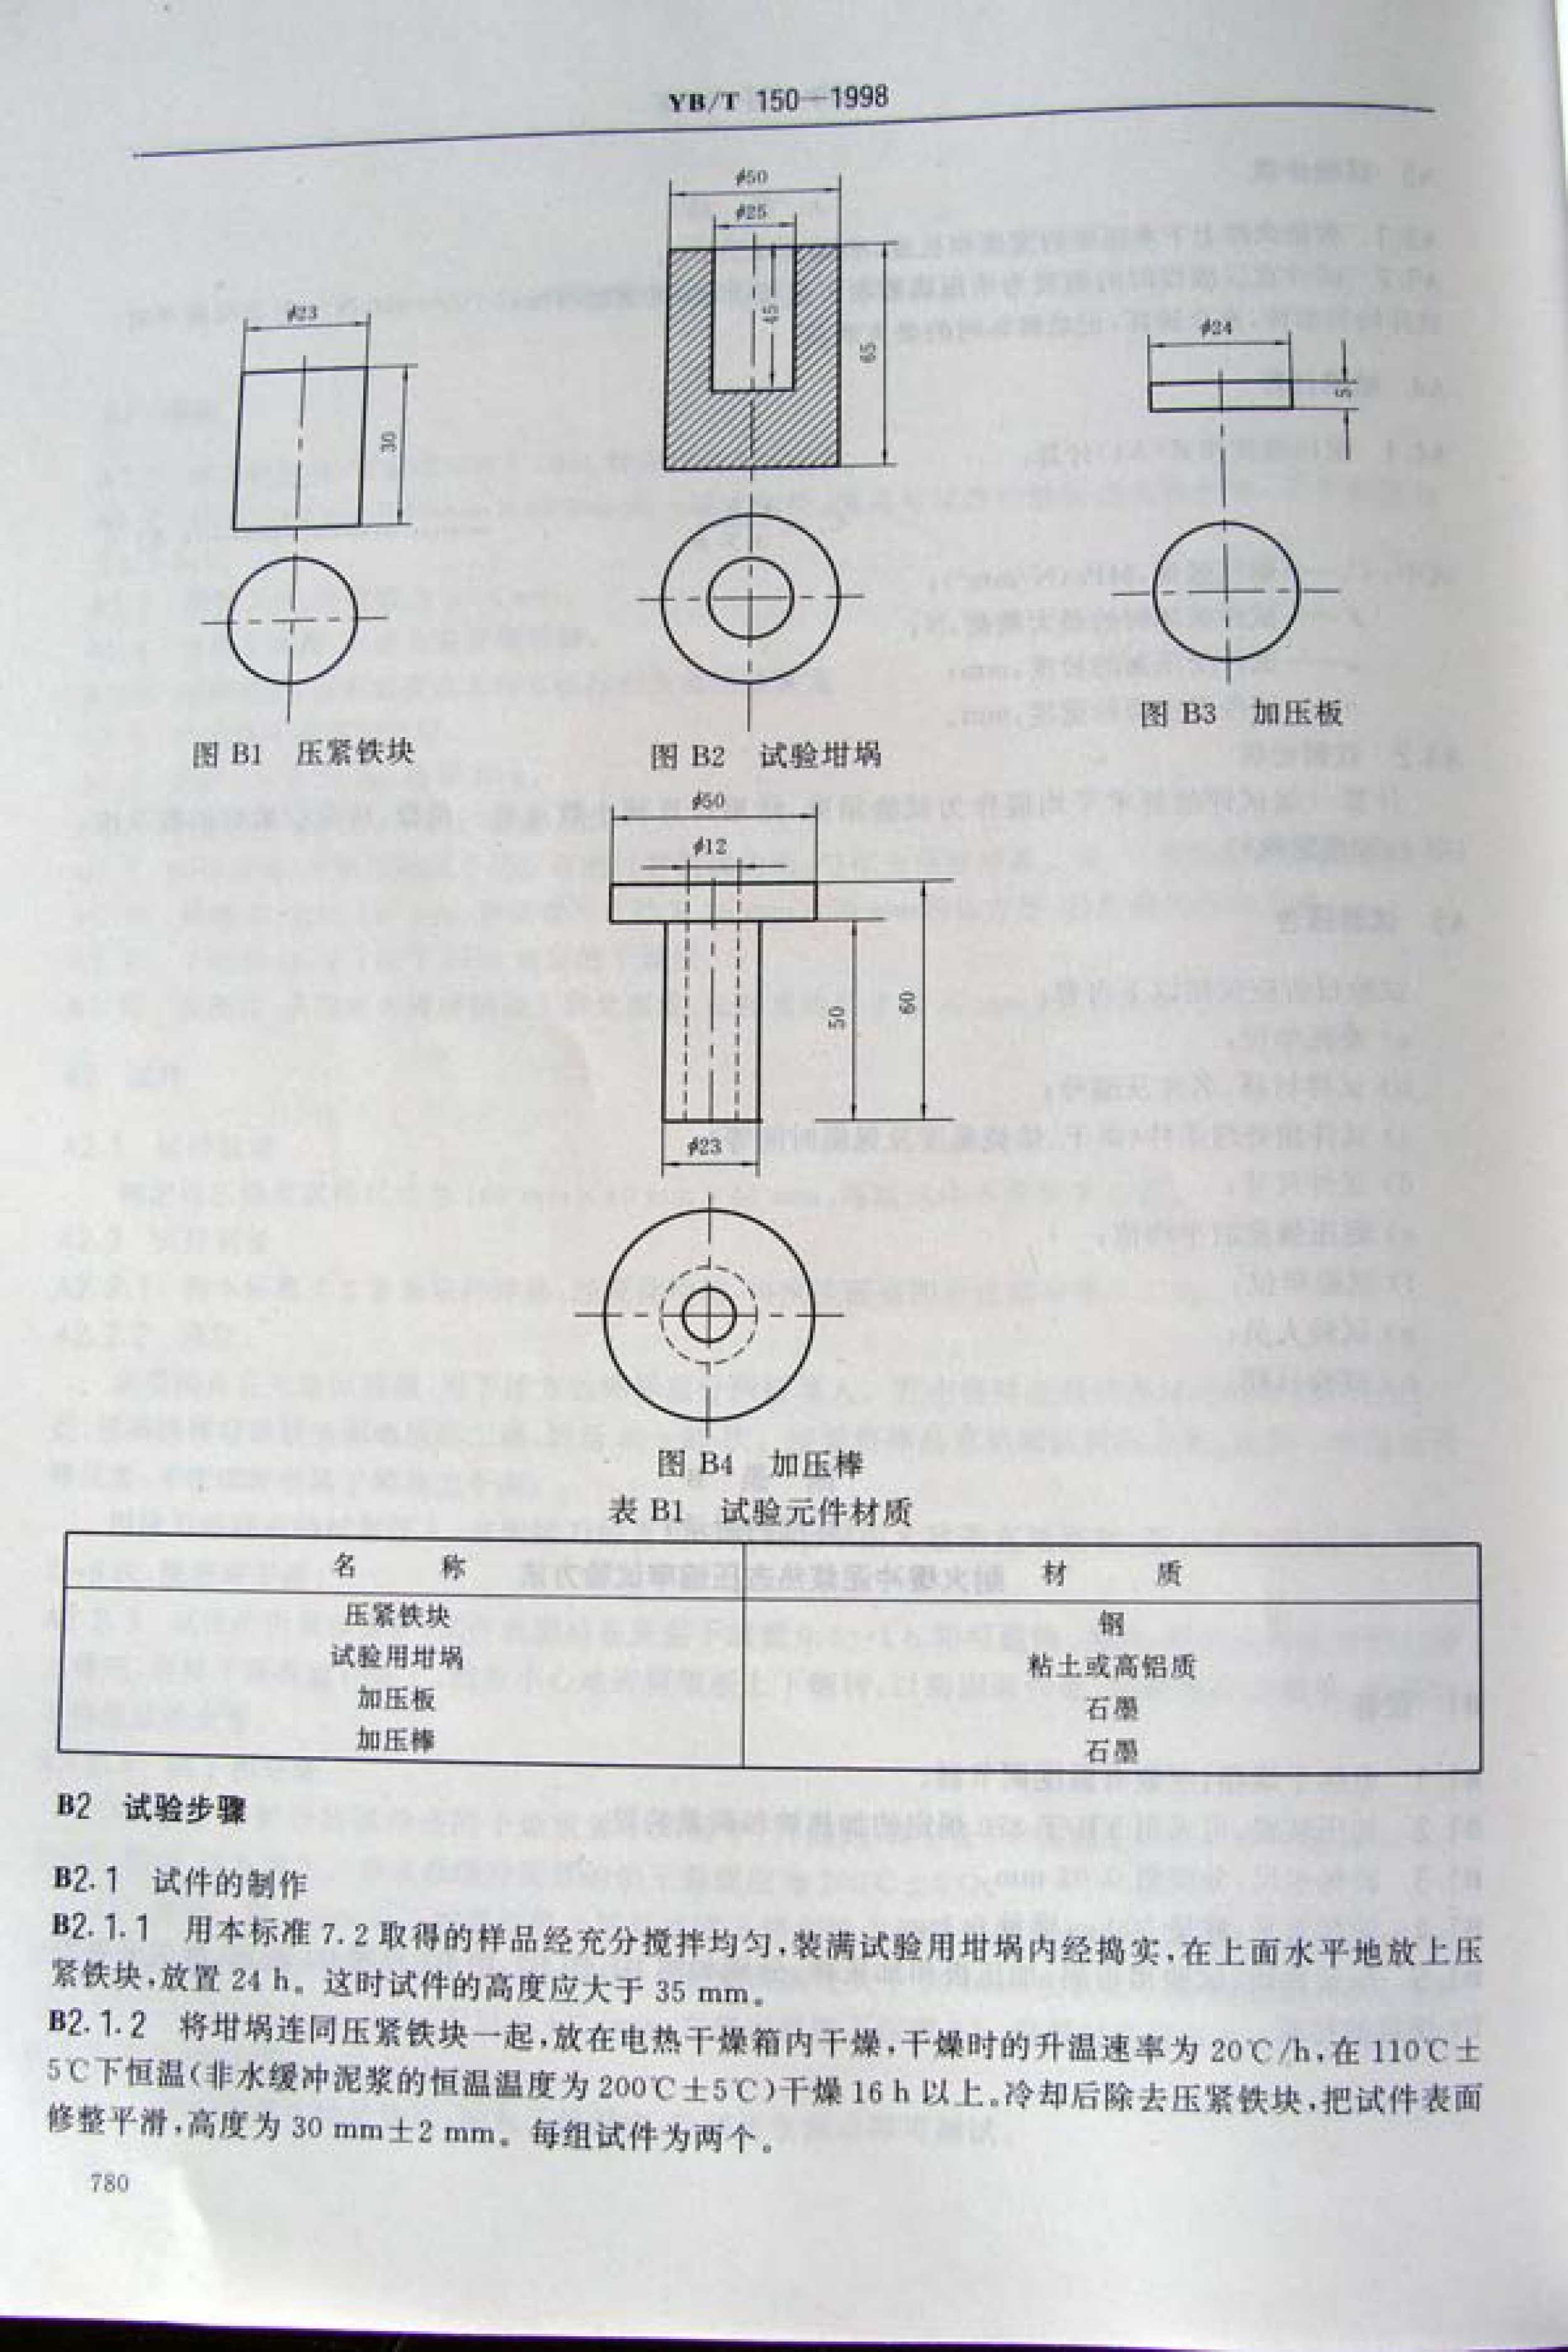 耐火缓冲泥浆行业标准 YB/T 150-1998